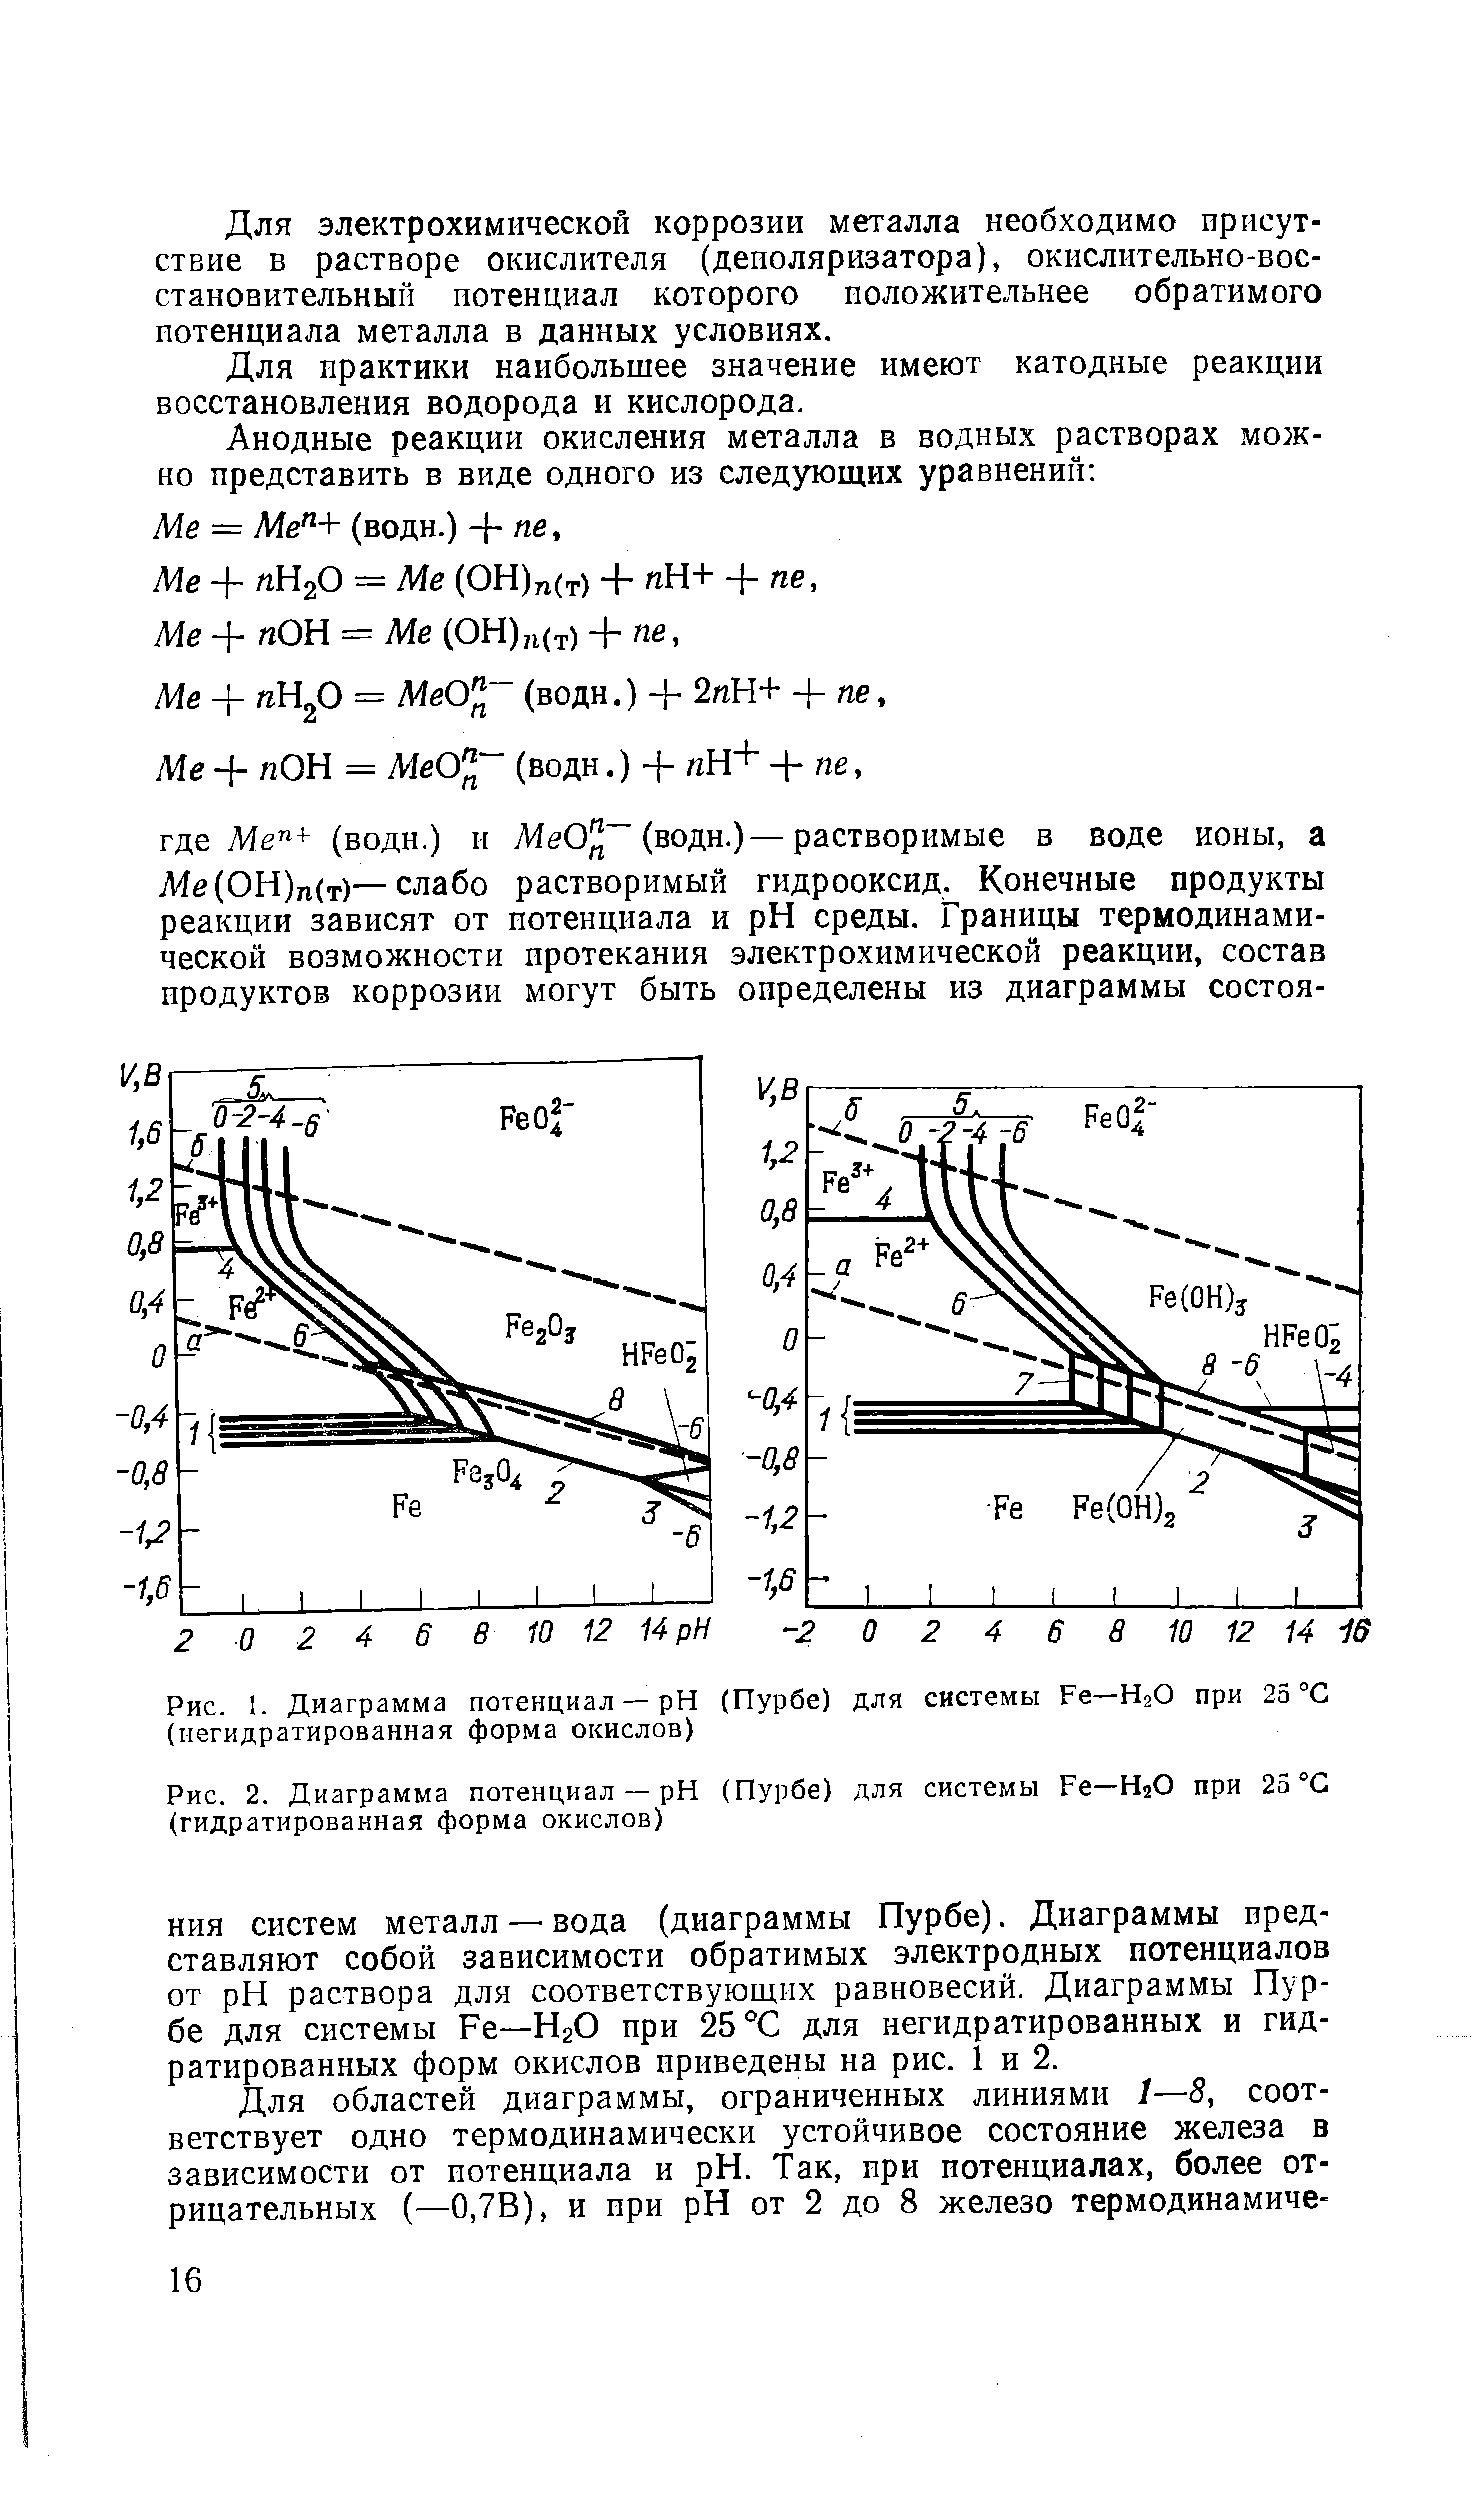 Рис. 1. Диаграмма потенциал — pH (Пурбе) для системы Fe—Н2О при 25 °С (мегидратированная форма окислов)
